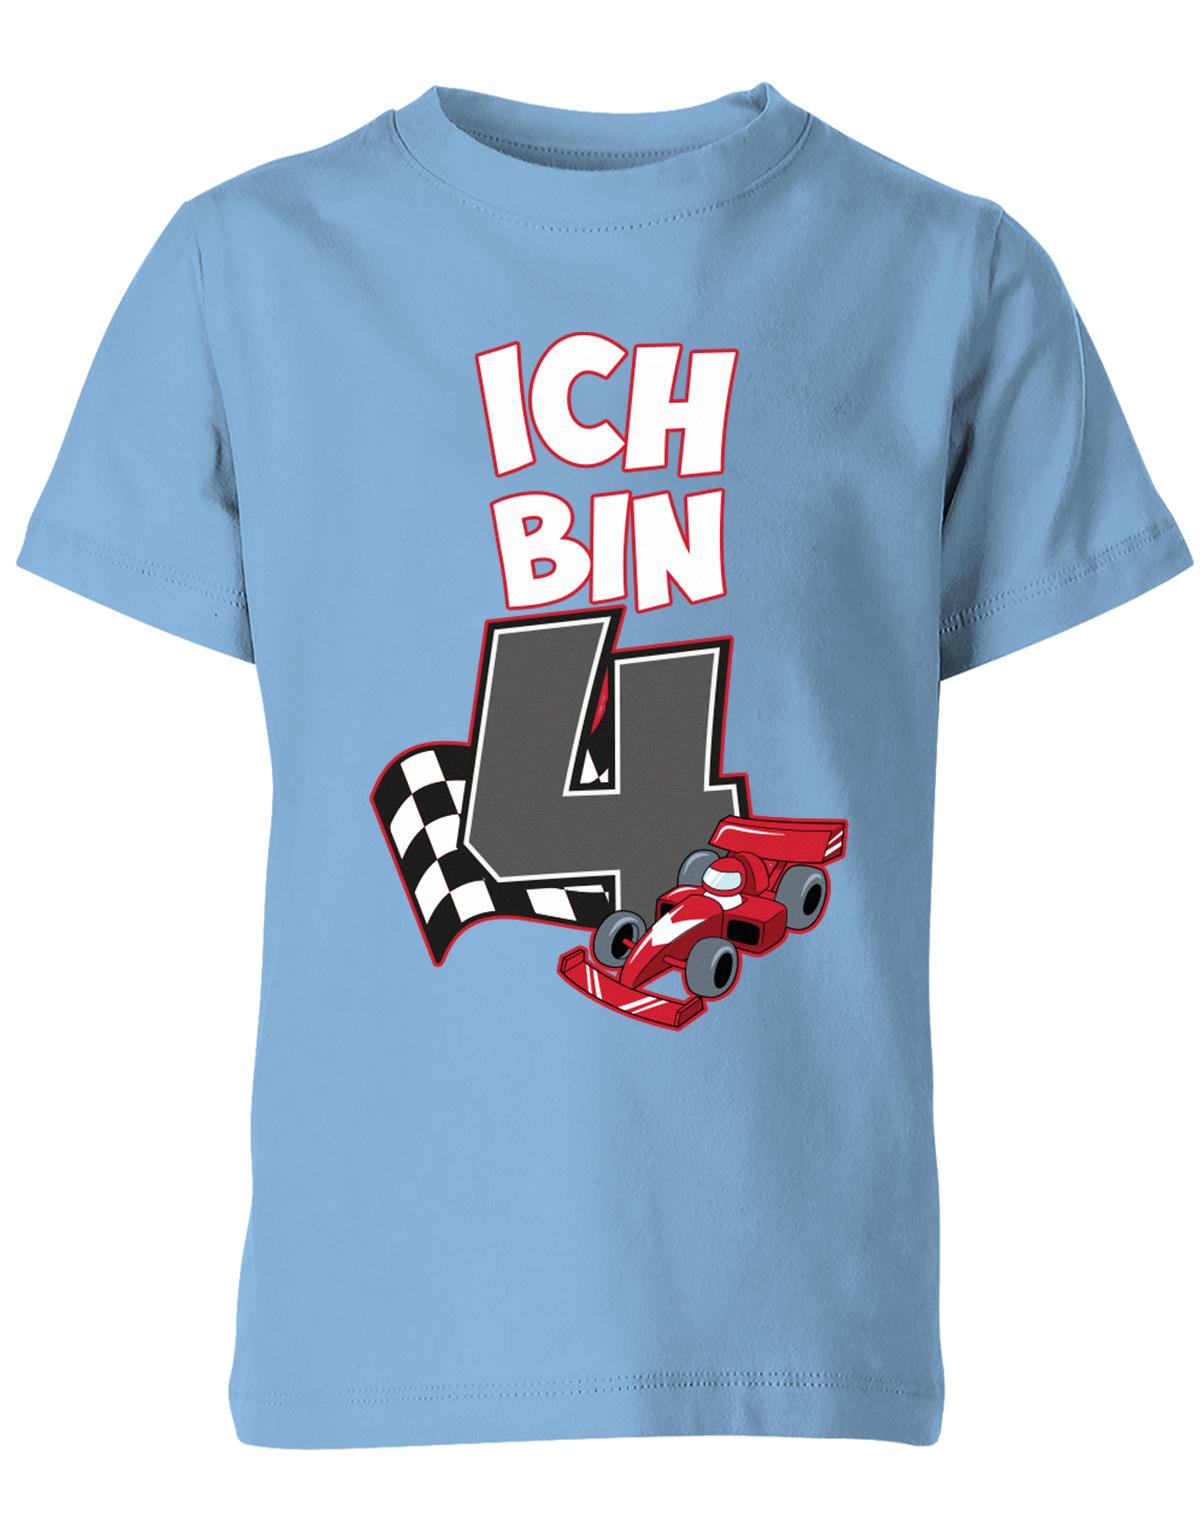 ich-bin-4-autorennen-rennwagen-geburtstag-rennfahrer-kinder-shirt-hellblau